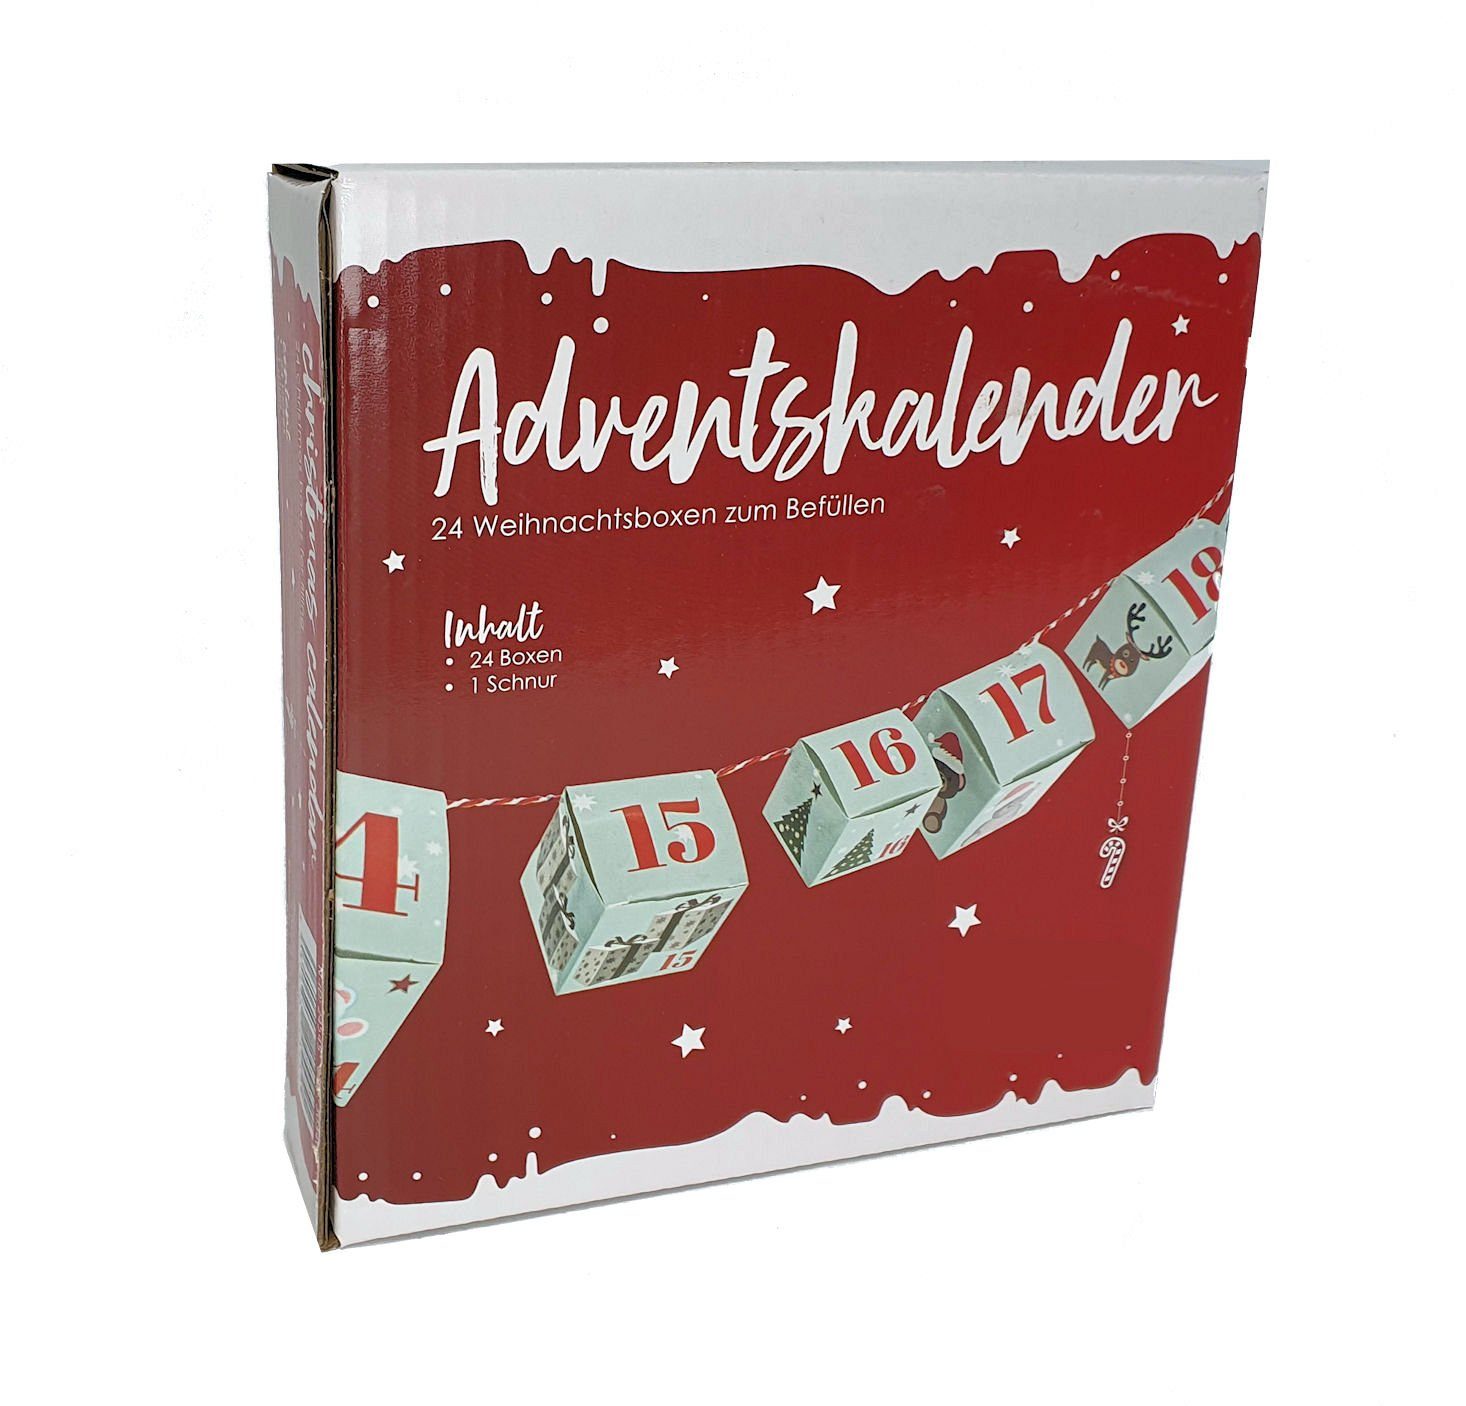 Spetebo befüllbarer Adventskalender 24 Weihnachtsboxen - zum Adventskalender, zum Befüllen befüllen